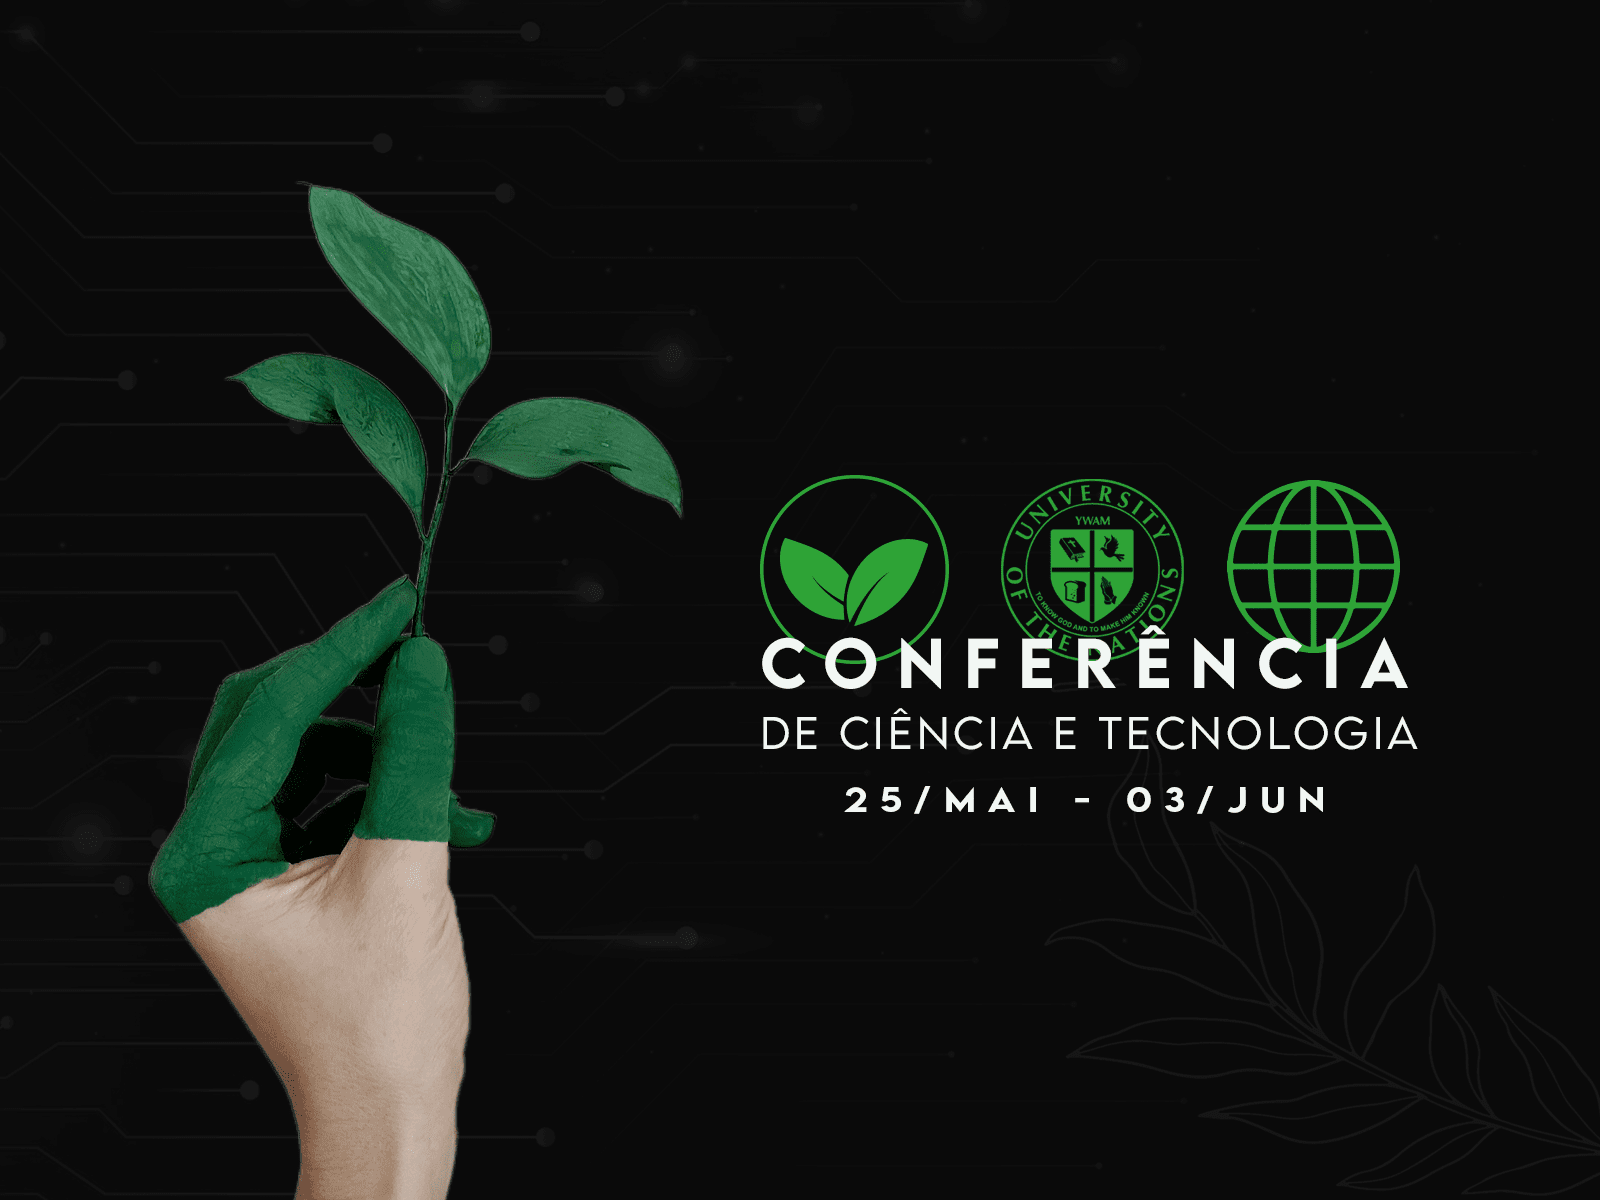 https://jocumcuritiba.org.br/conferenciadecienciaetecnologia